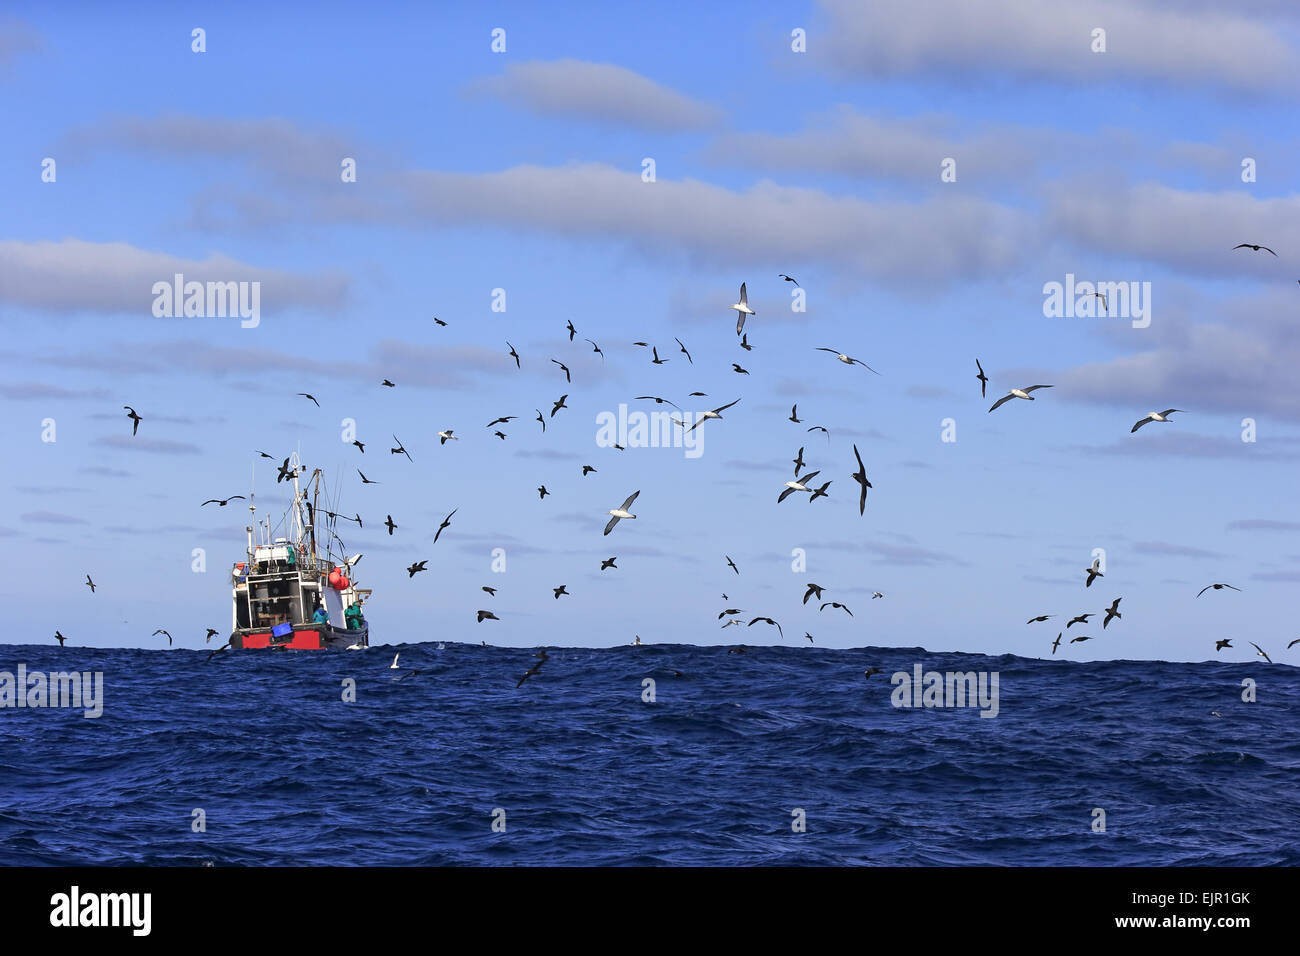 La pesca a strascico in mare, essendo seguita da uccelli marini, compresi albatri e procellarie, Capo di Buona Speranza, Western Cape, Sud Africa, Giugno Foto Stock